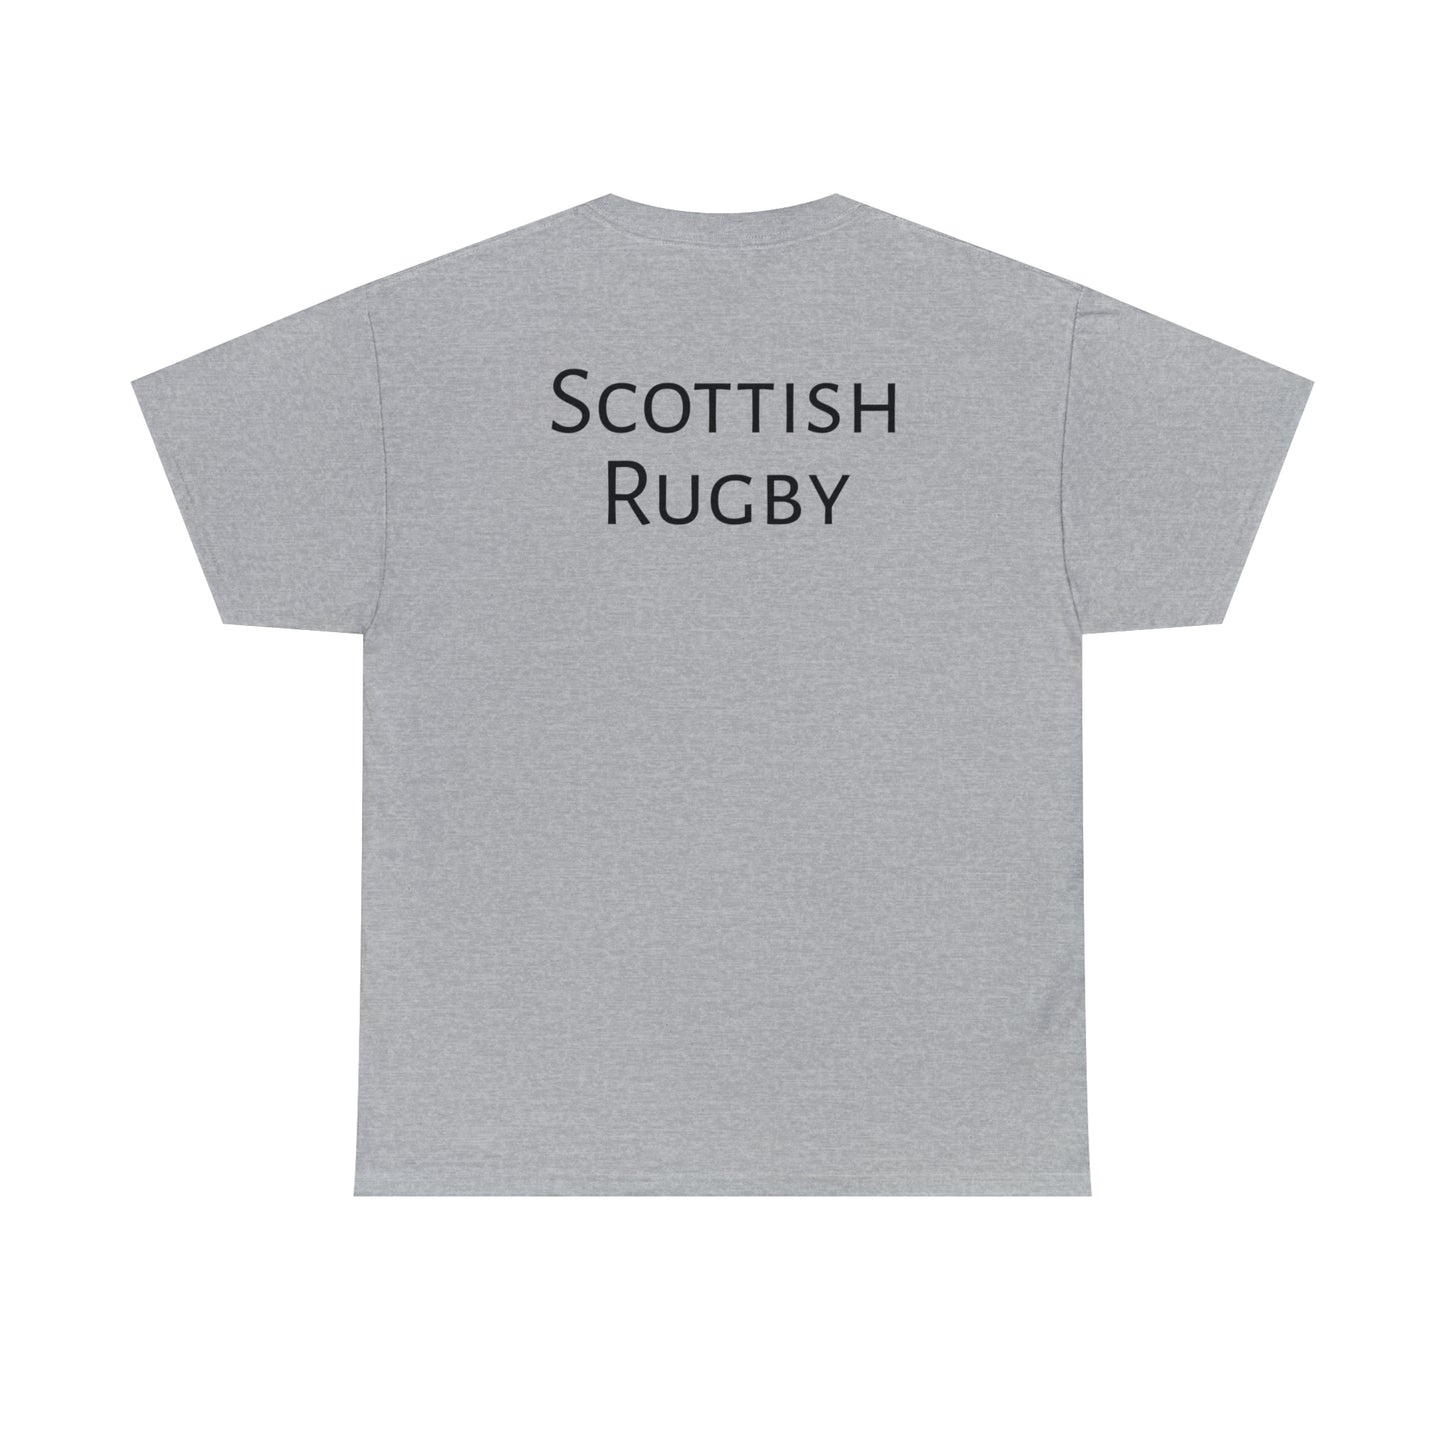 Post Match Scotland - light shirts